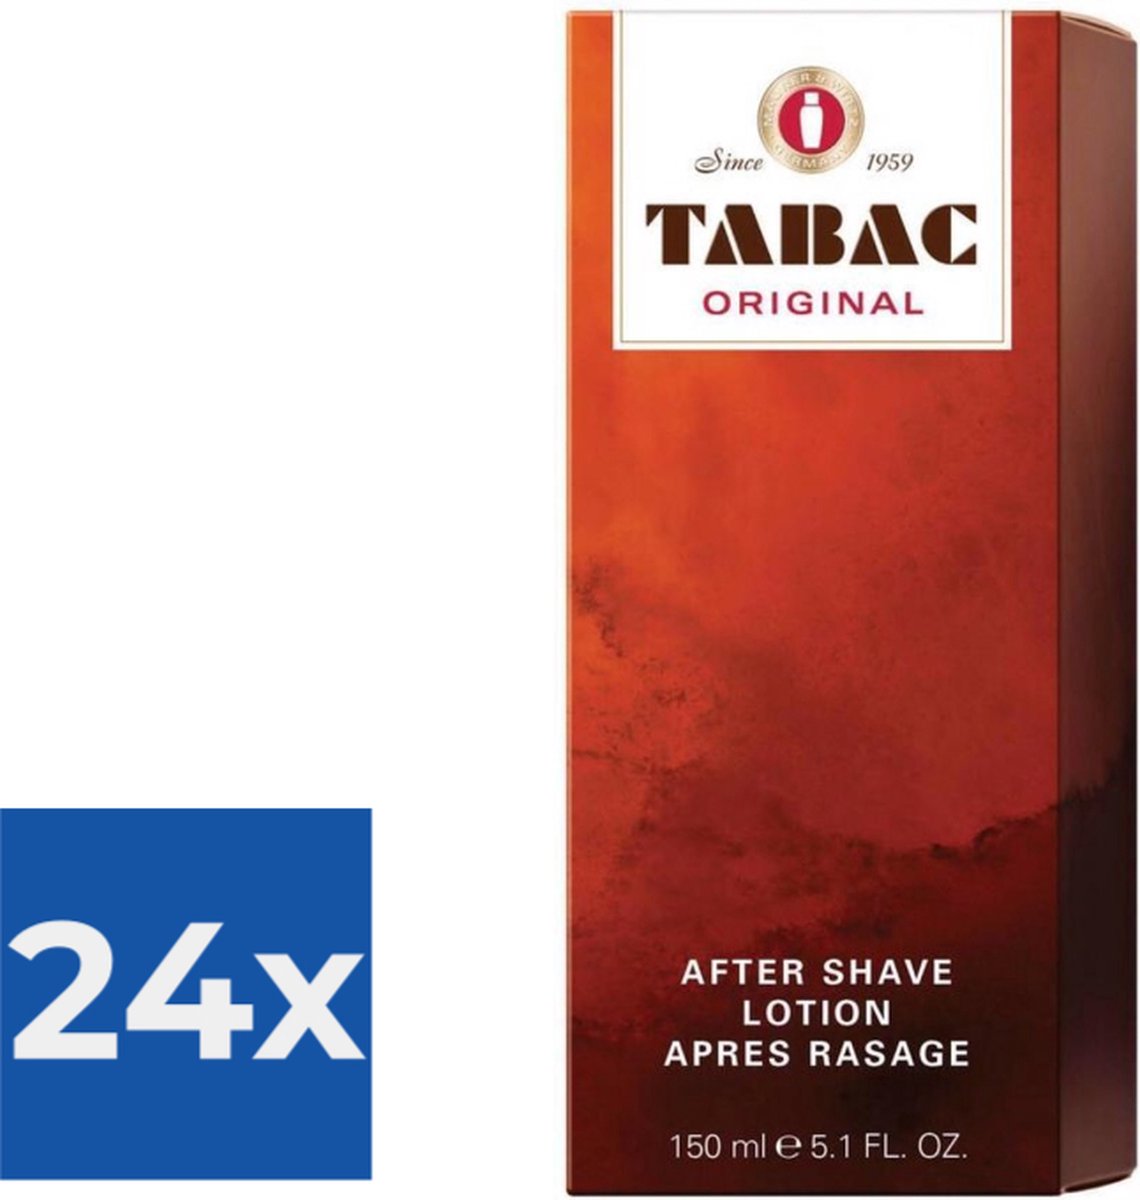 Tabac Original for Men - 150 ml - Aftershave lotion - Voordeelverpakking 24 stuks